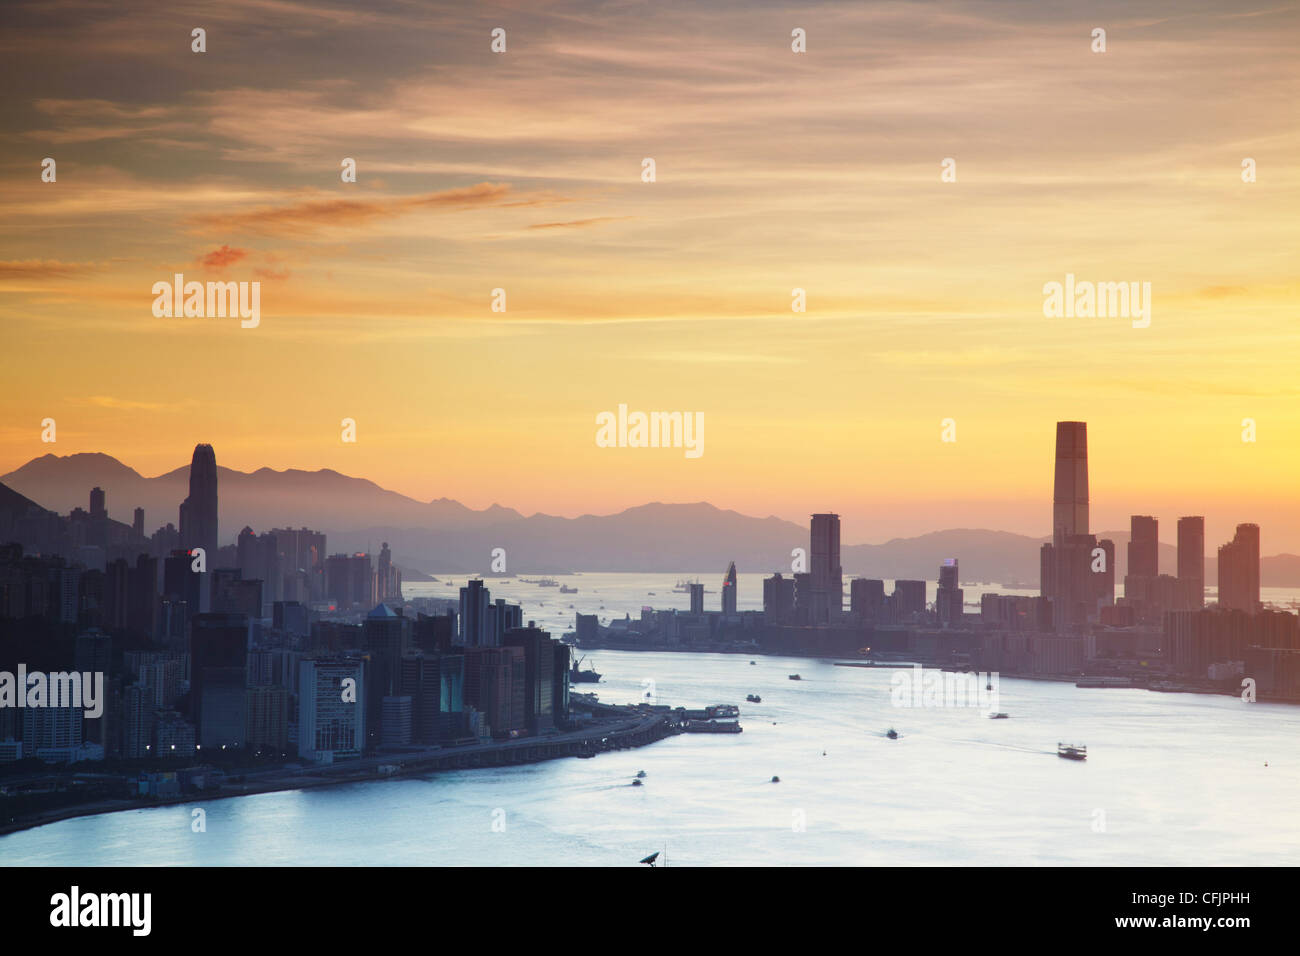 Hong Kong Island and Tsim Sha Tsui skylines at sunset, Hong Kong, China, Asia Stock Photo